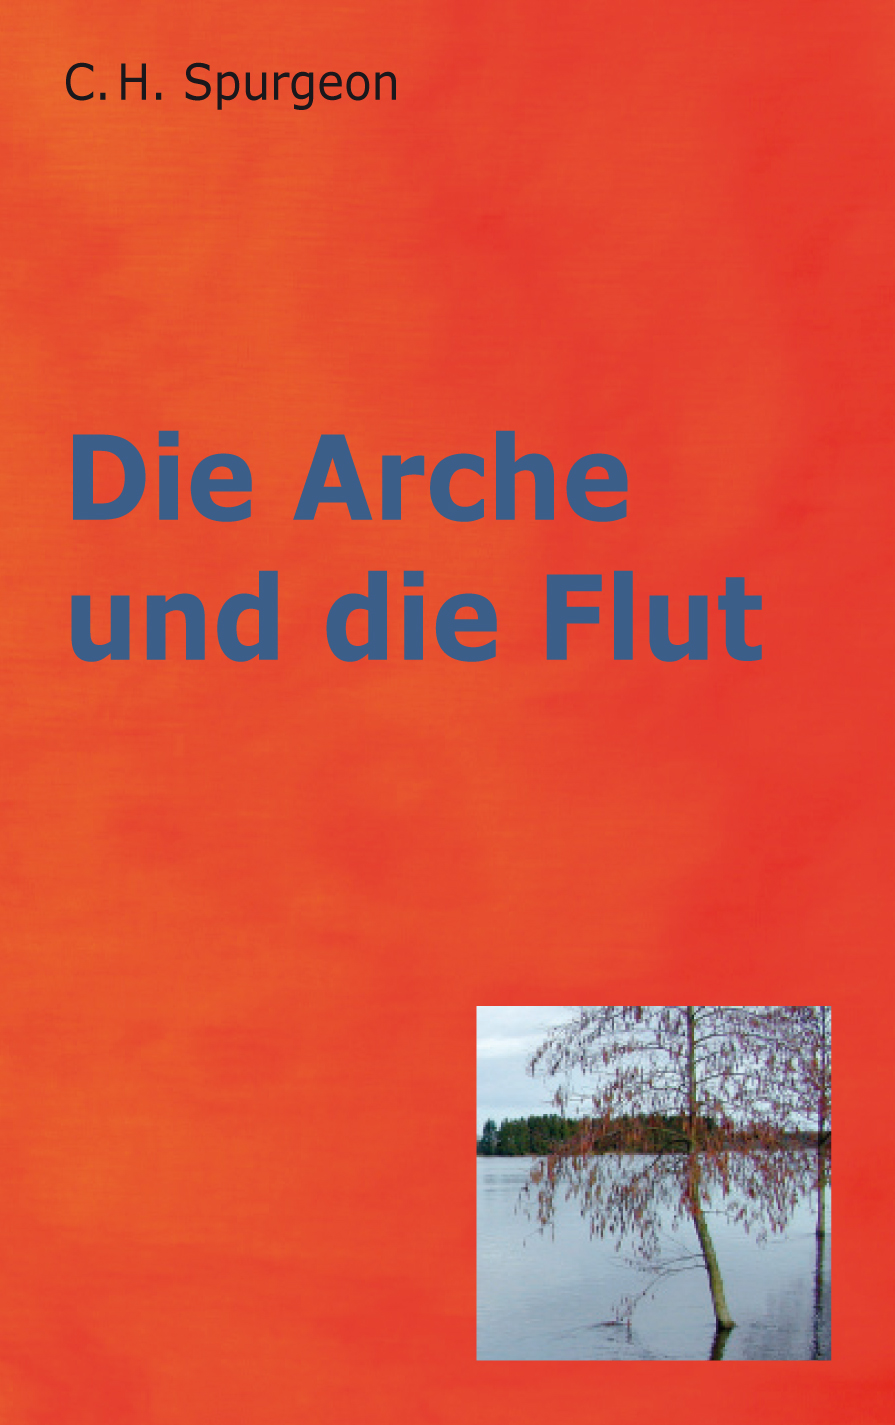 Die_Arche_Und_Die_Flut_2001.jpg